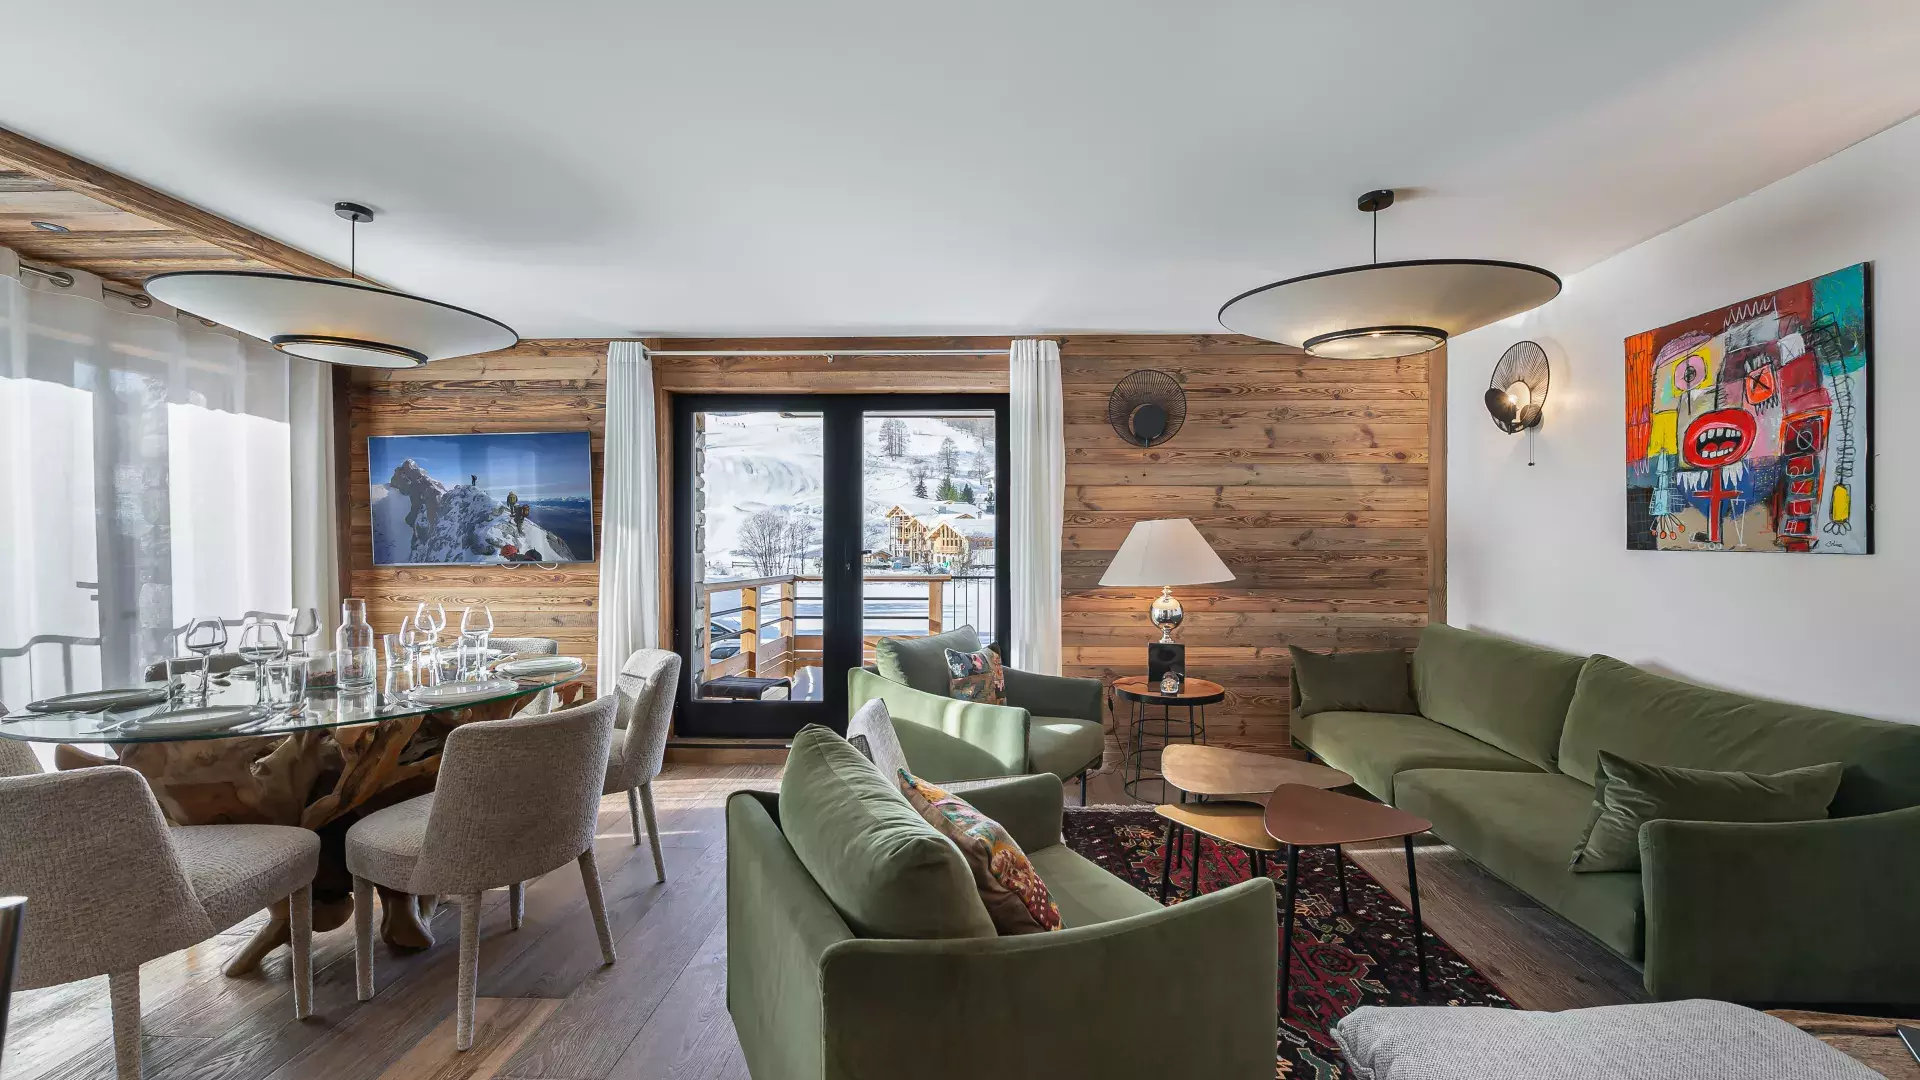 Appartement Sifflote 4 - Location chalets Covarel - Val d'Isère Alpes - France - Salle à manger